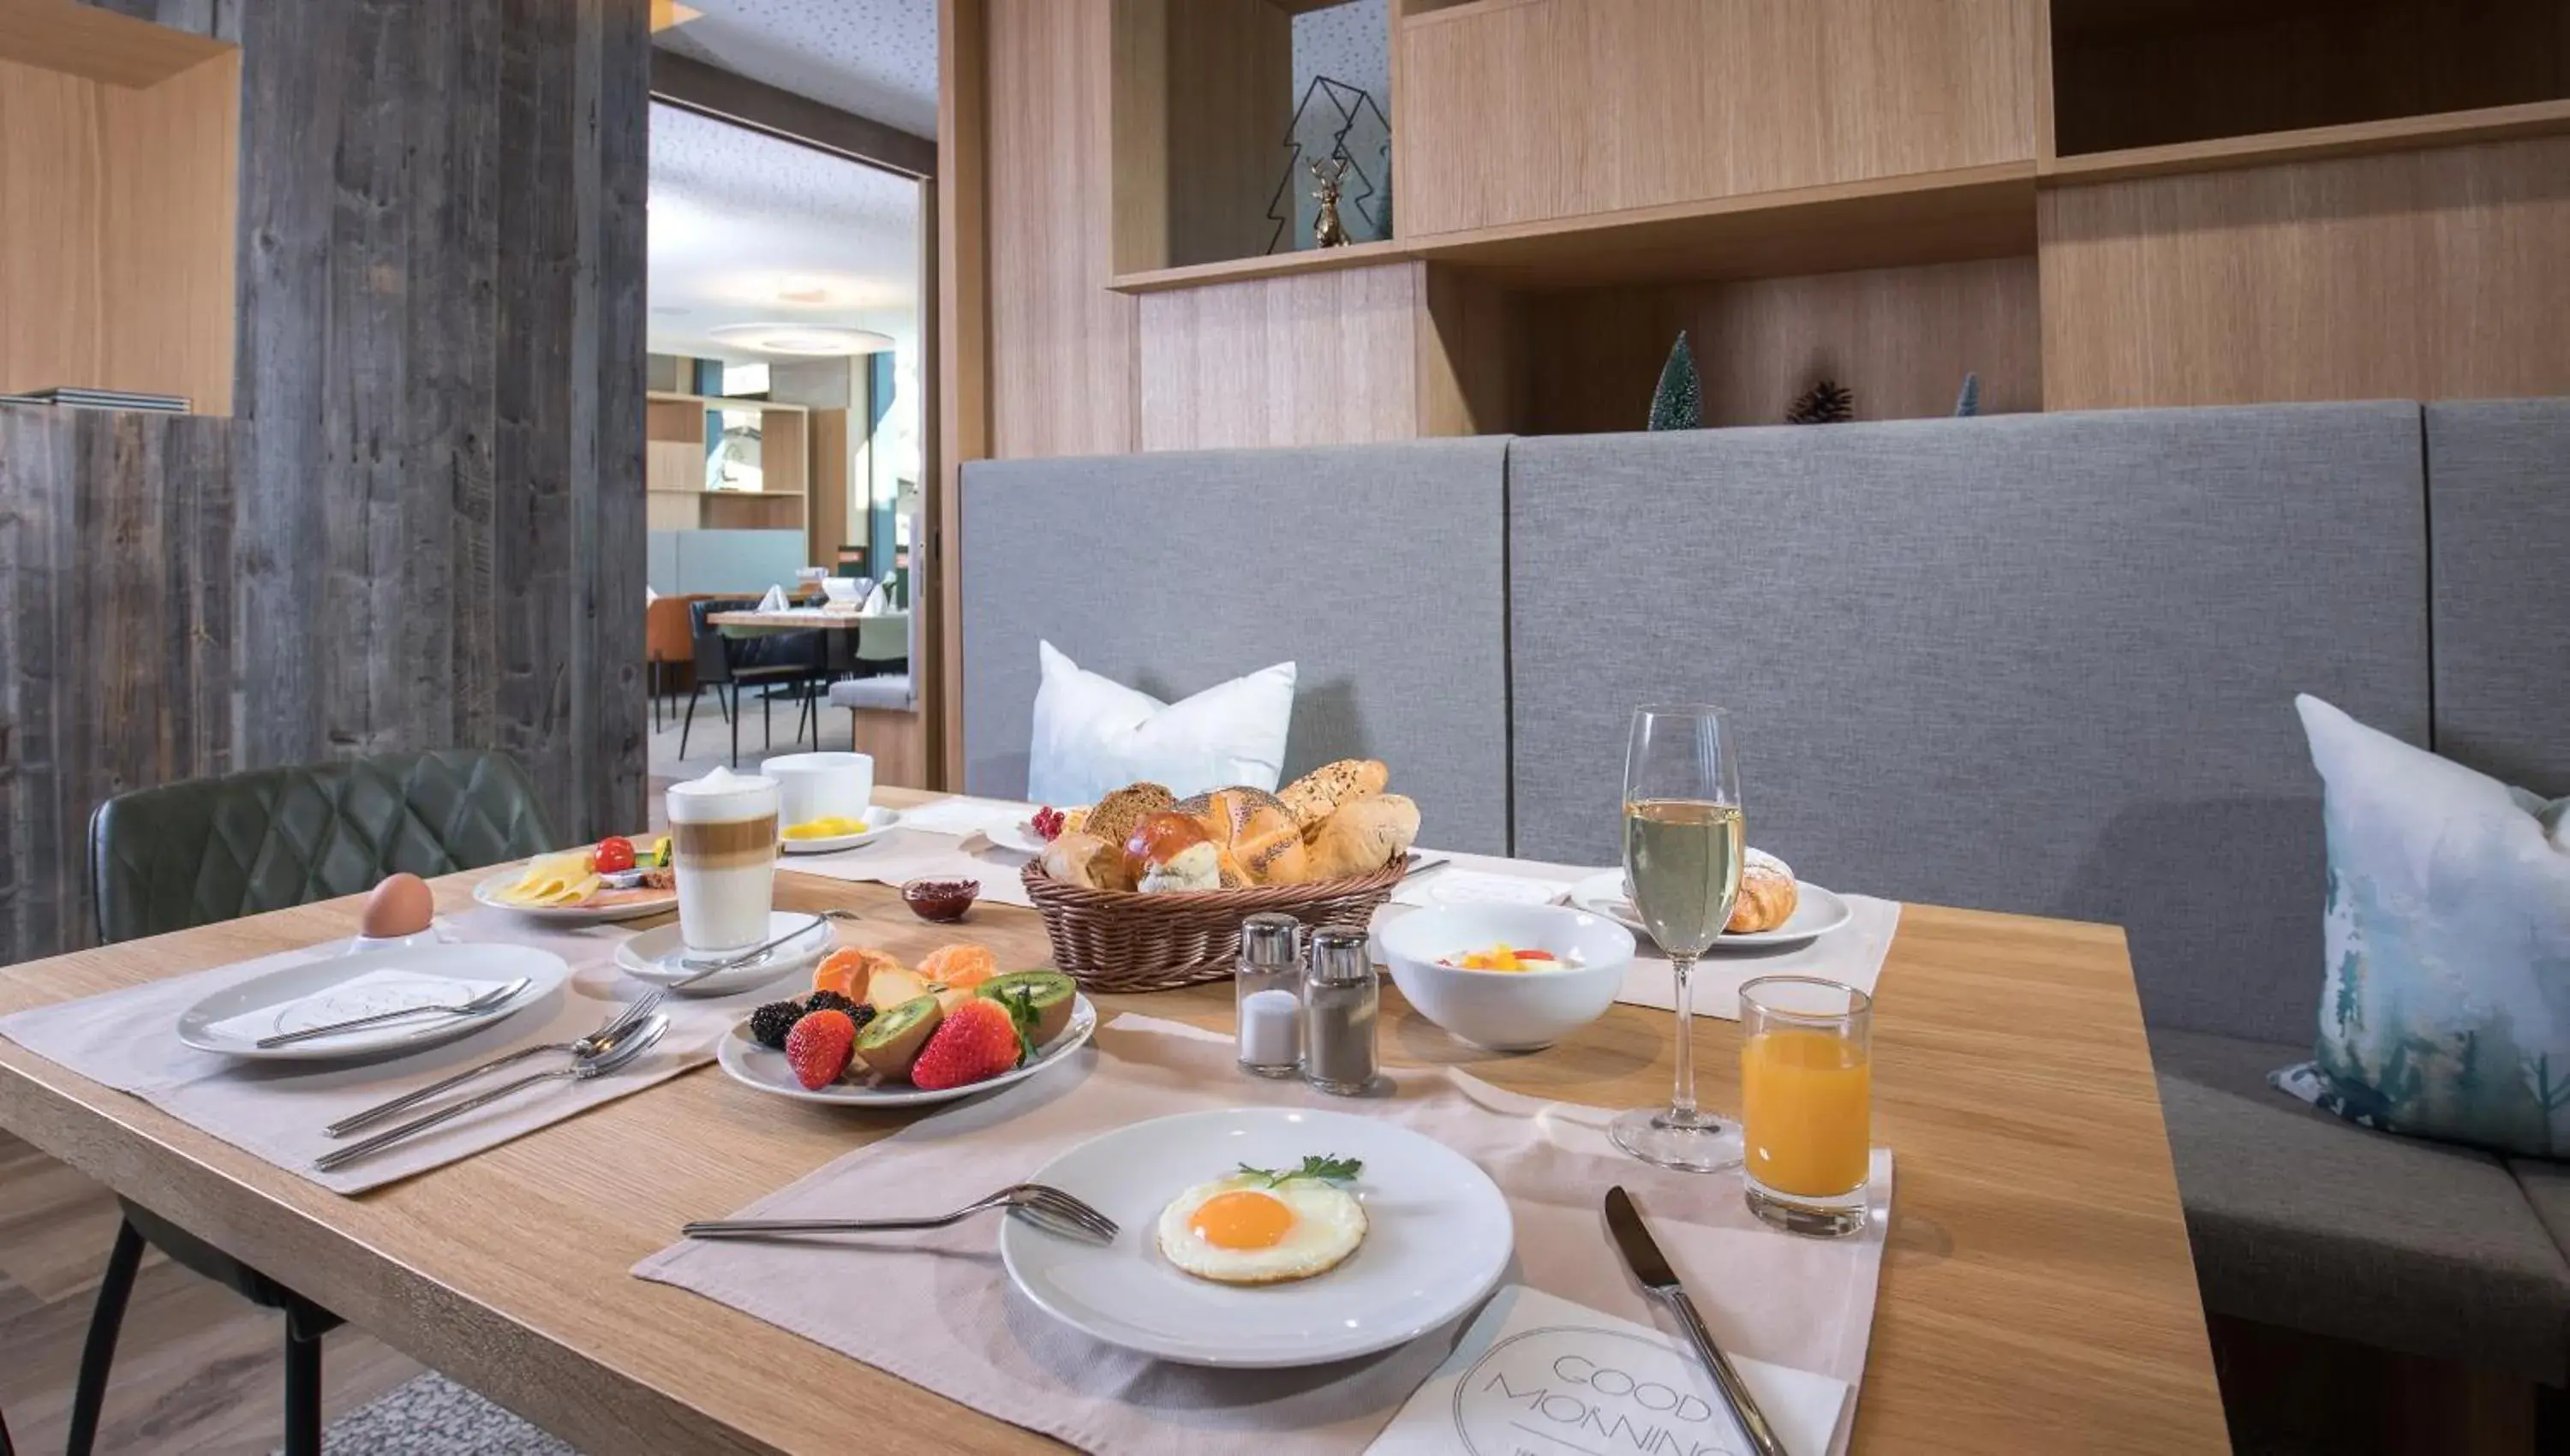 Buffet breakfast, Breakfast in Hotel Der Waldhof